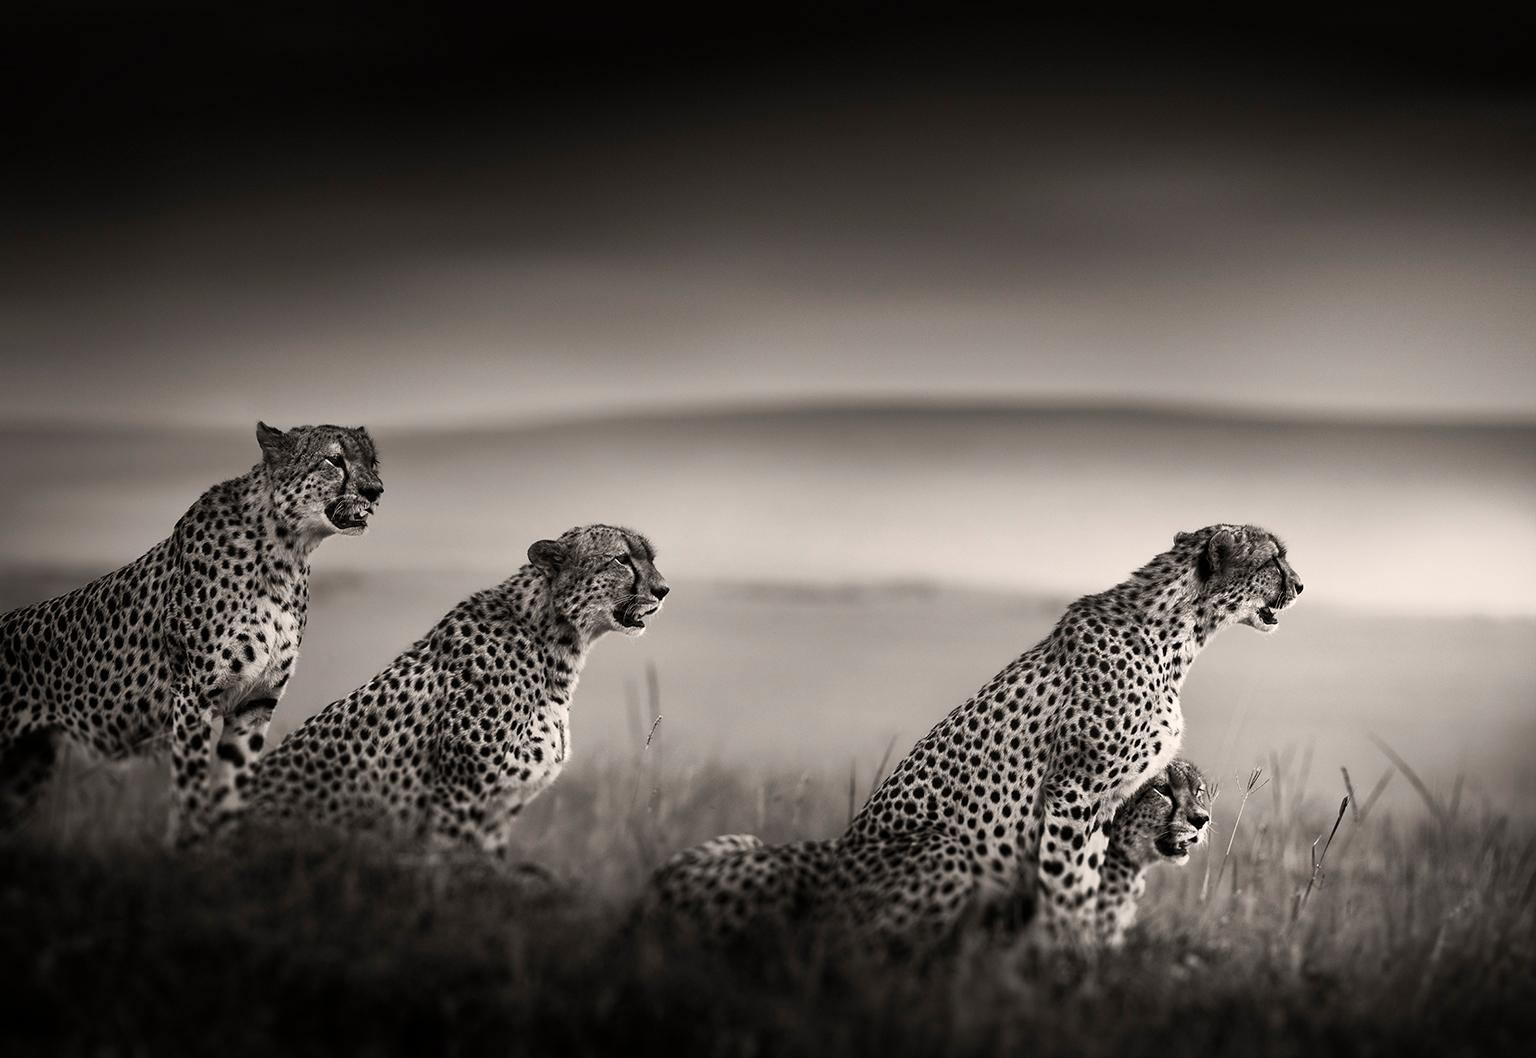 Joachim Schmeisser Portrait Photograph – Tano Bora, Cheetah-Fotografie, Schwarz- und Hwite-Fotografie, Afrika, Porträt, Tierwelt